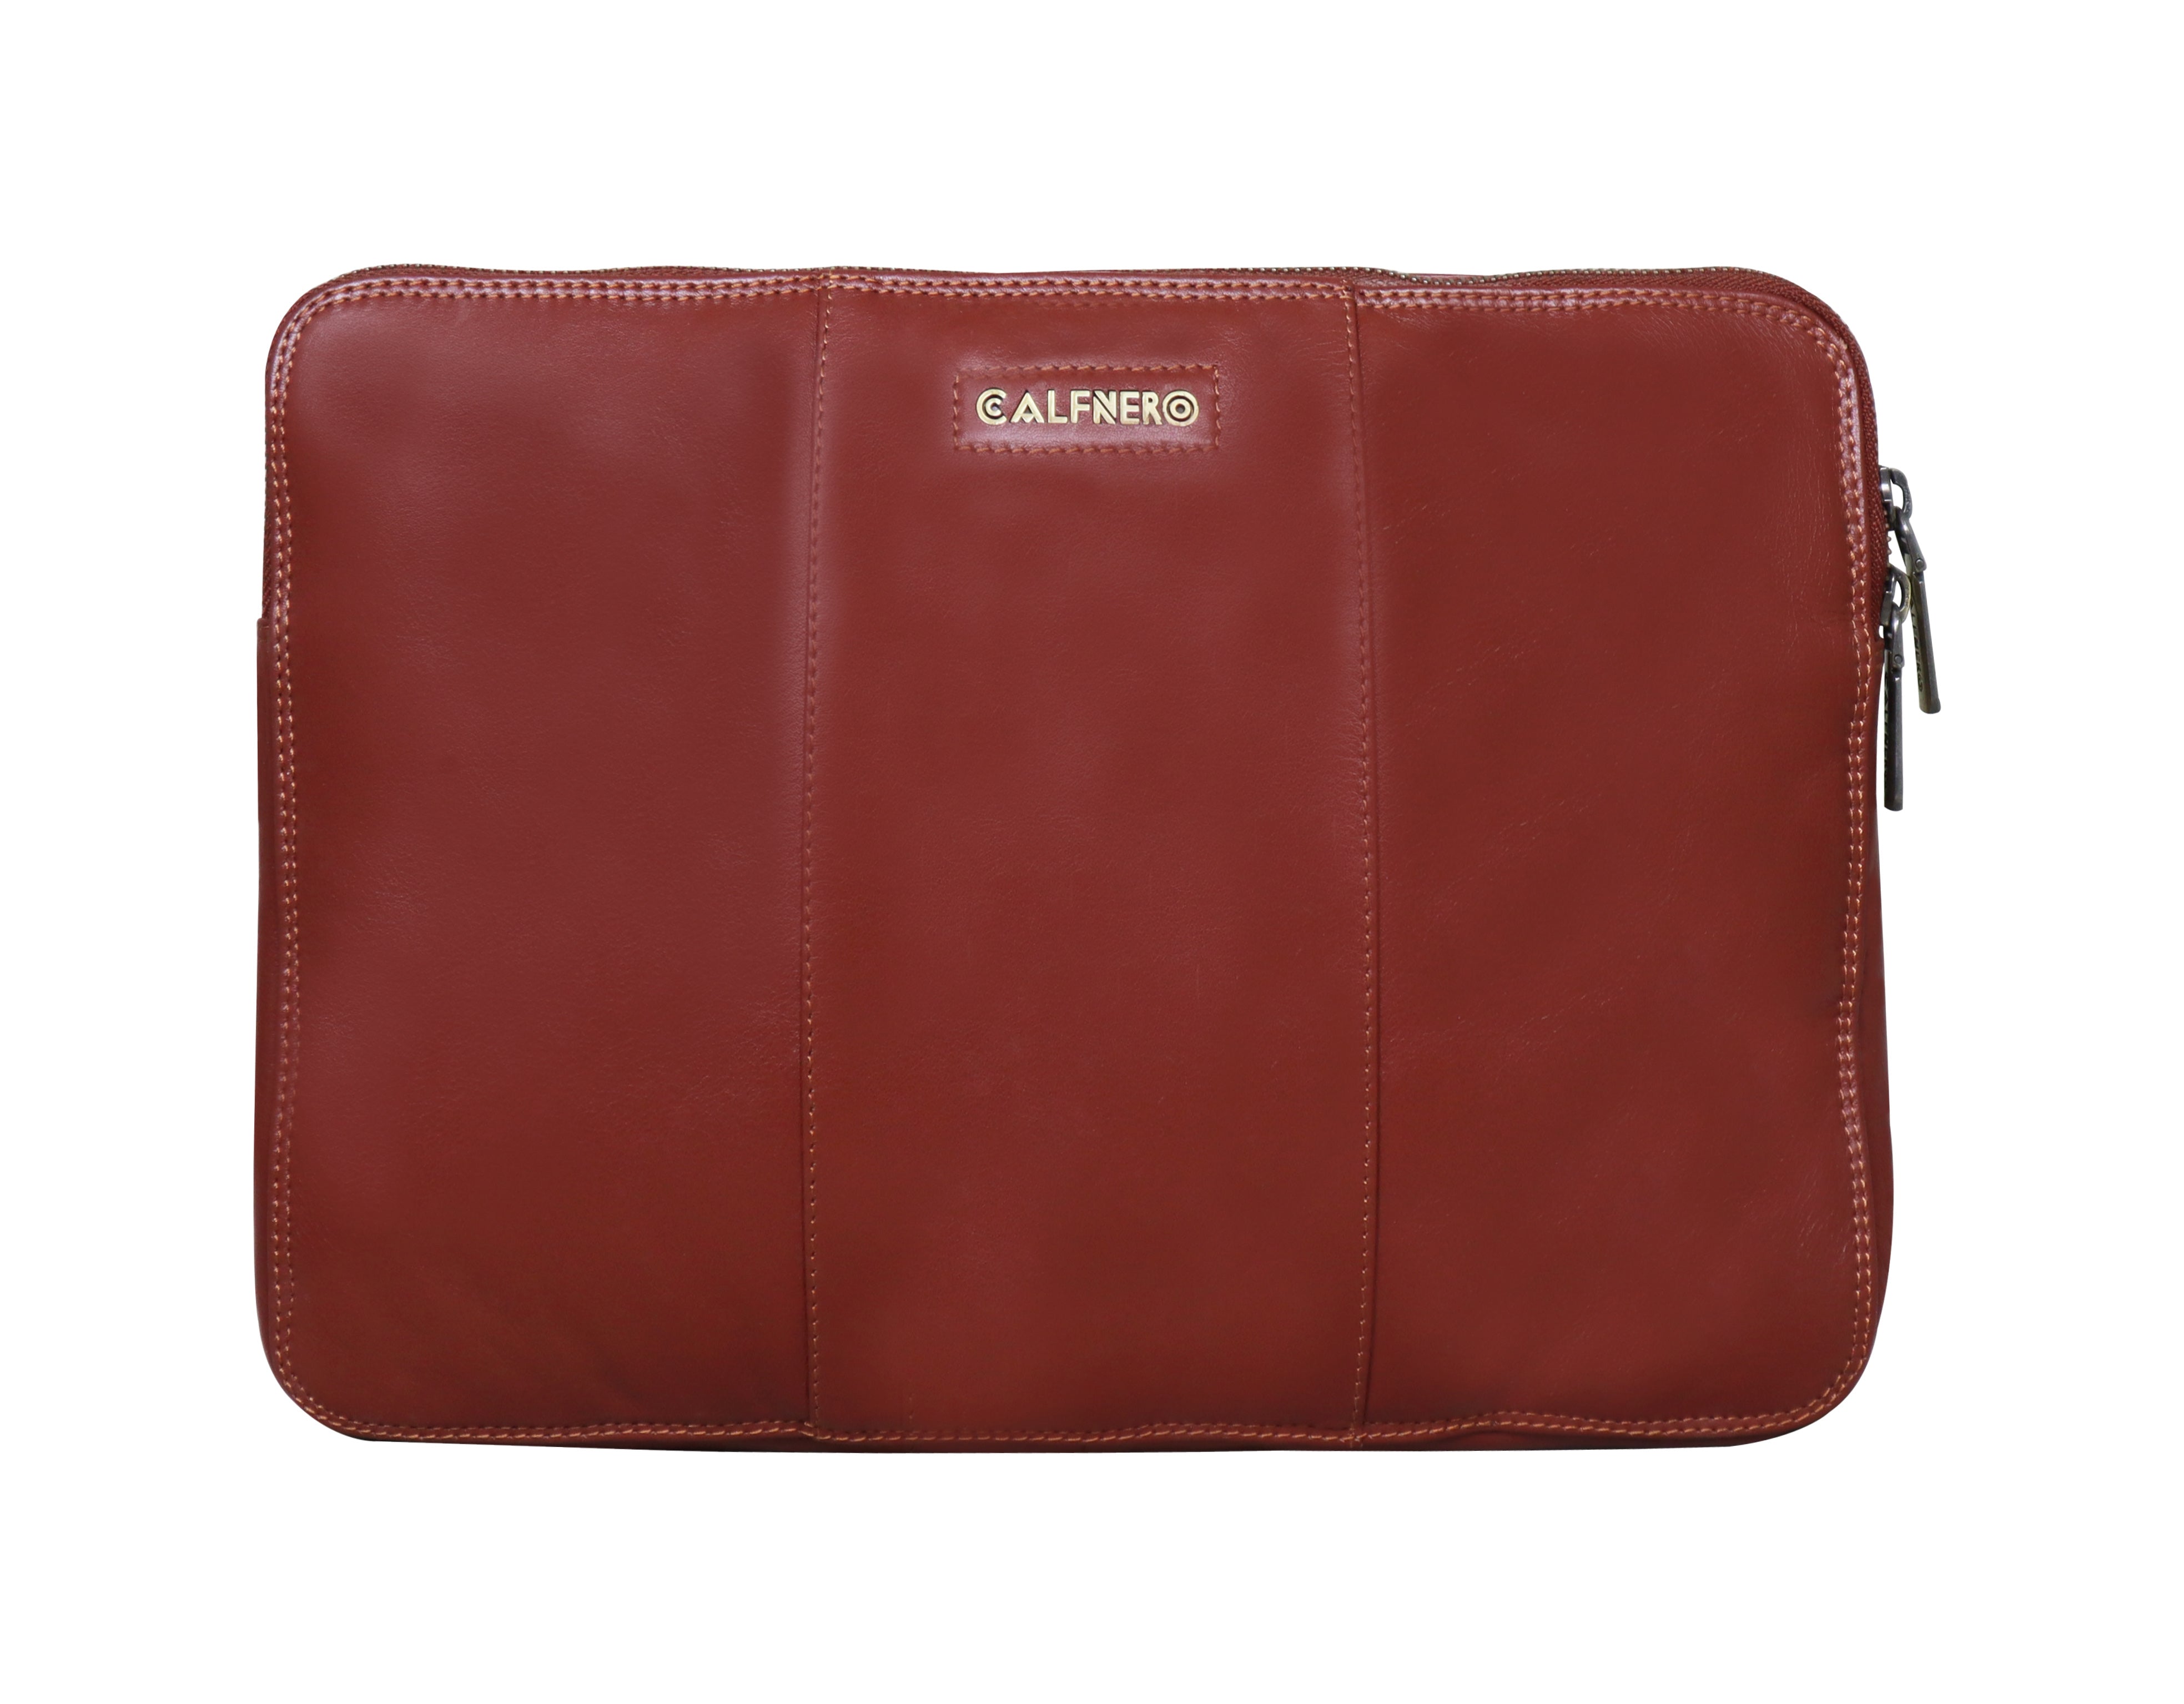 The Clutch for iPad | Ipad purse, Ipad bag, Bags